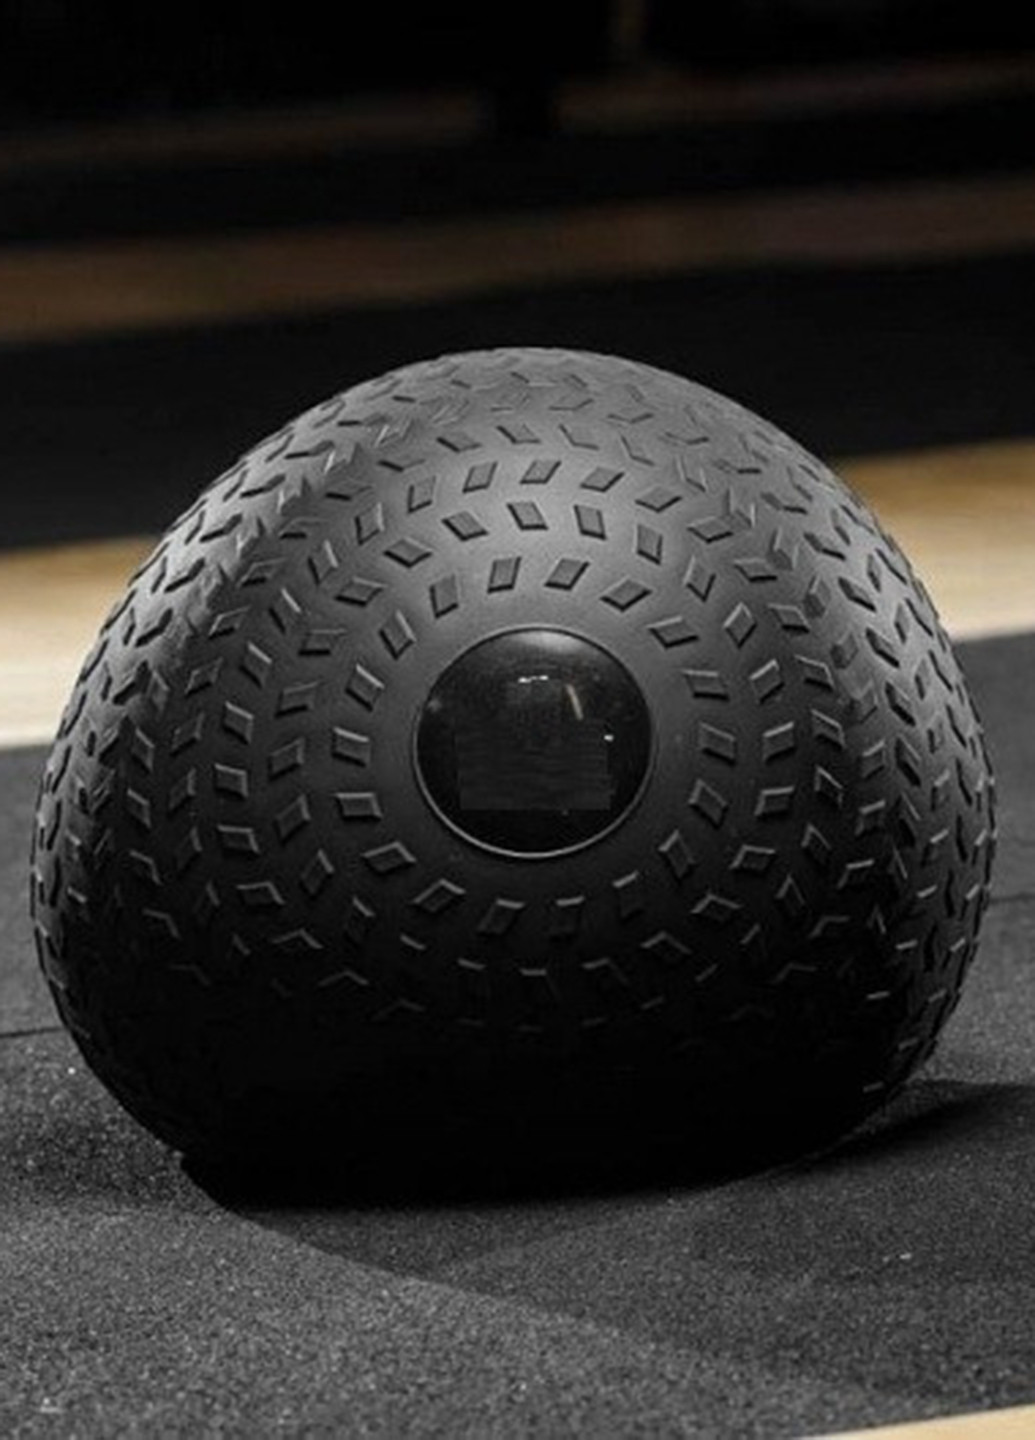 М'яч SlamBall для кросфіта і фітнесу, 3 кг Power System (138296564)